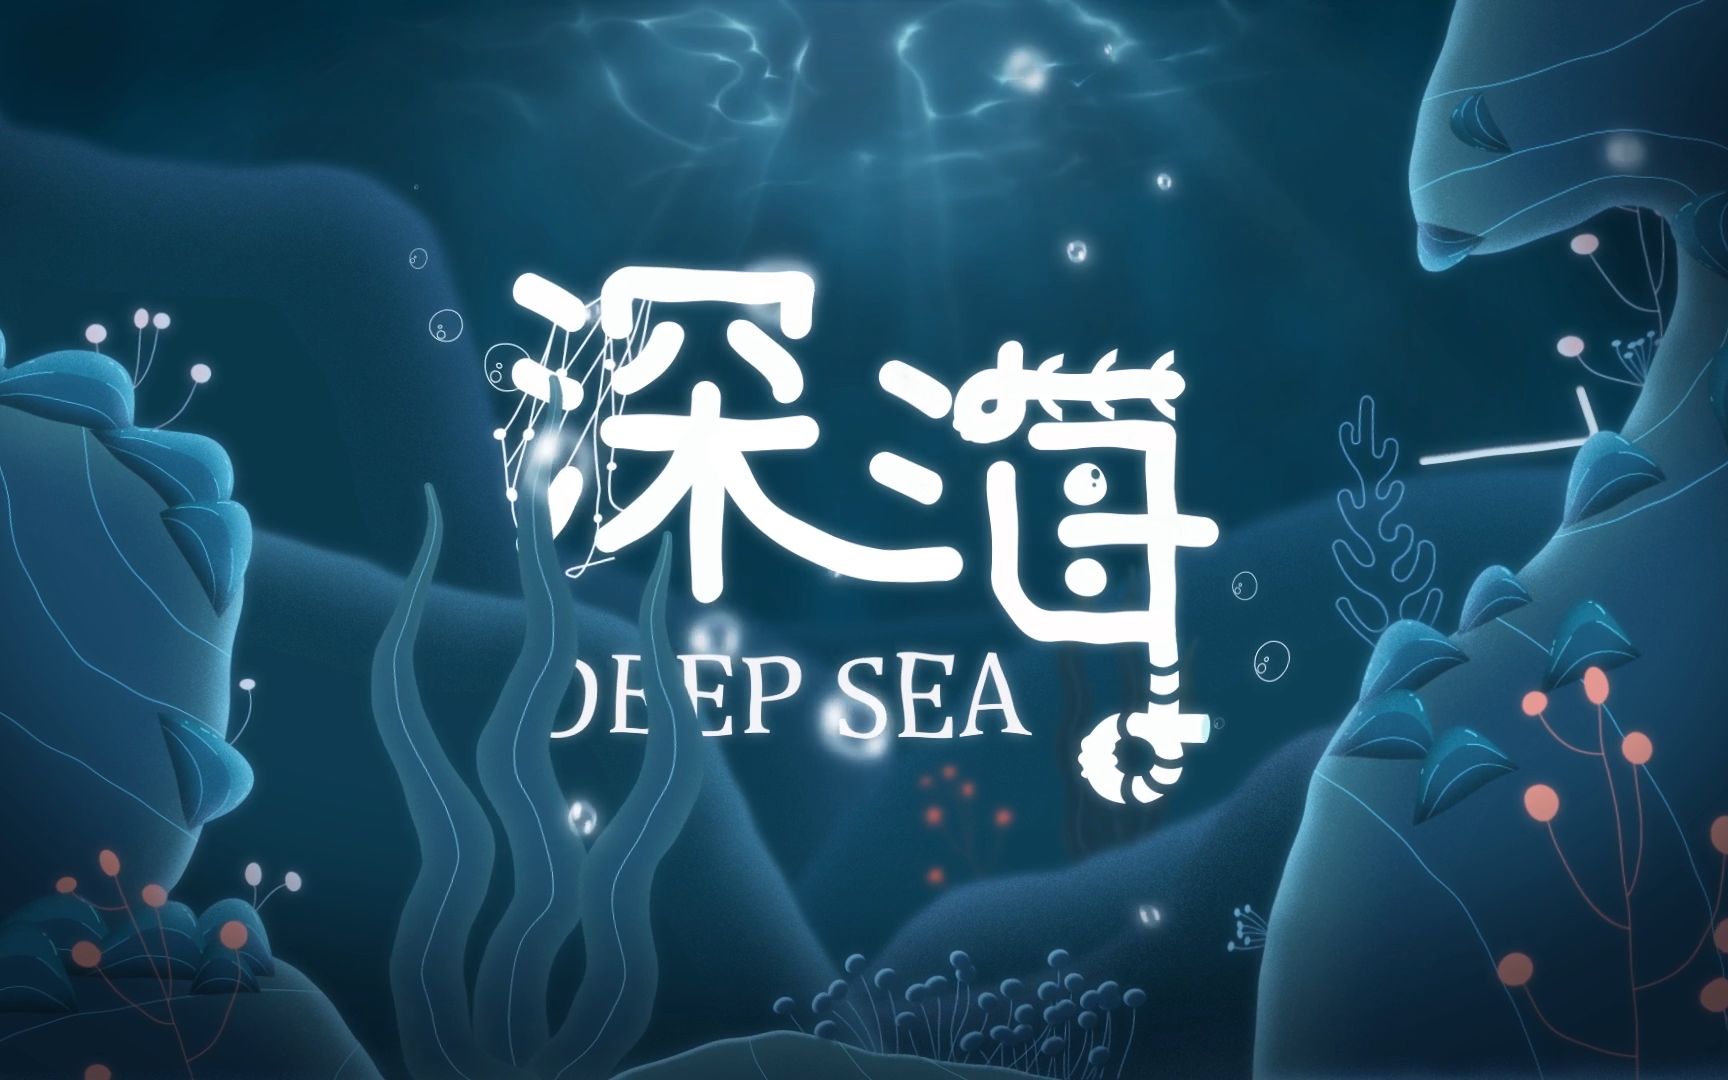 《深海》——毕业设计MG动画